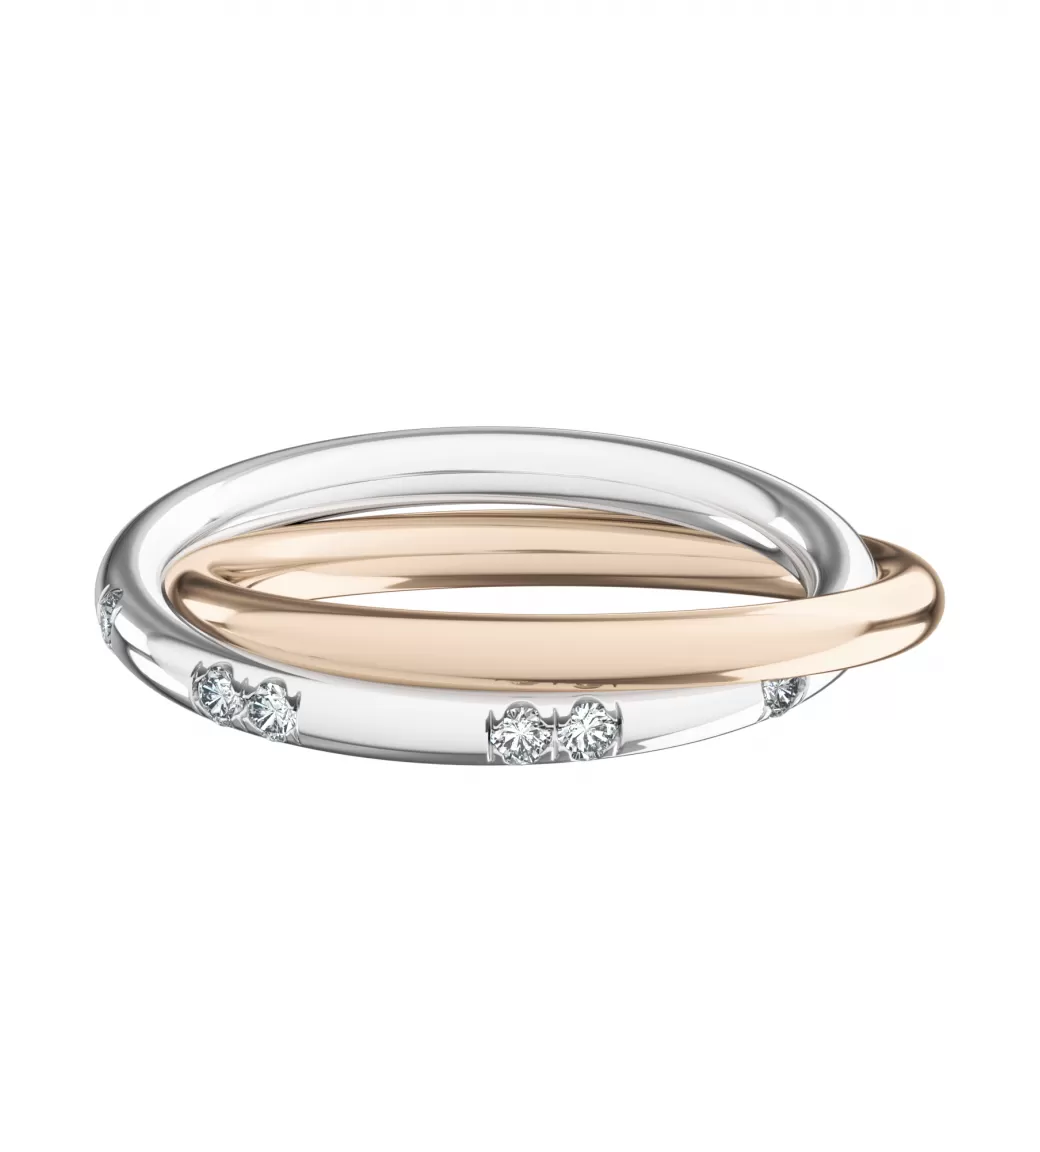 Общая ширина 4,8 мм, бриллианты огранки "круг" 1,5 мм. Белое и розовое золото.